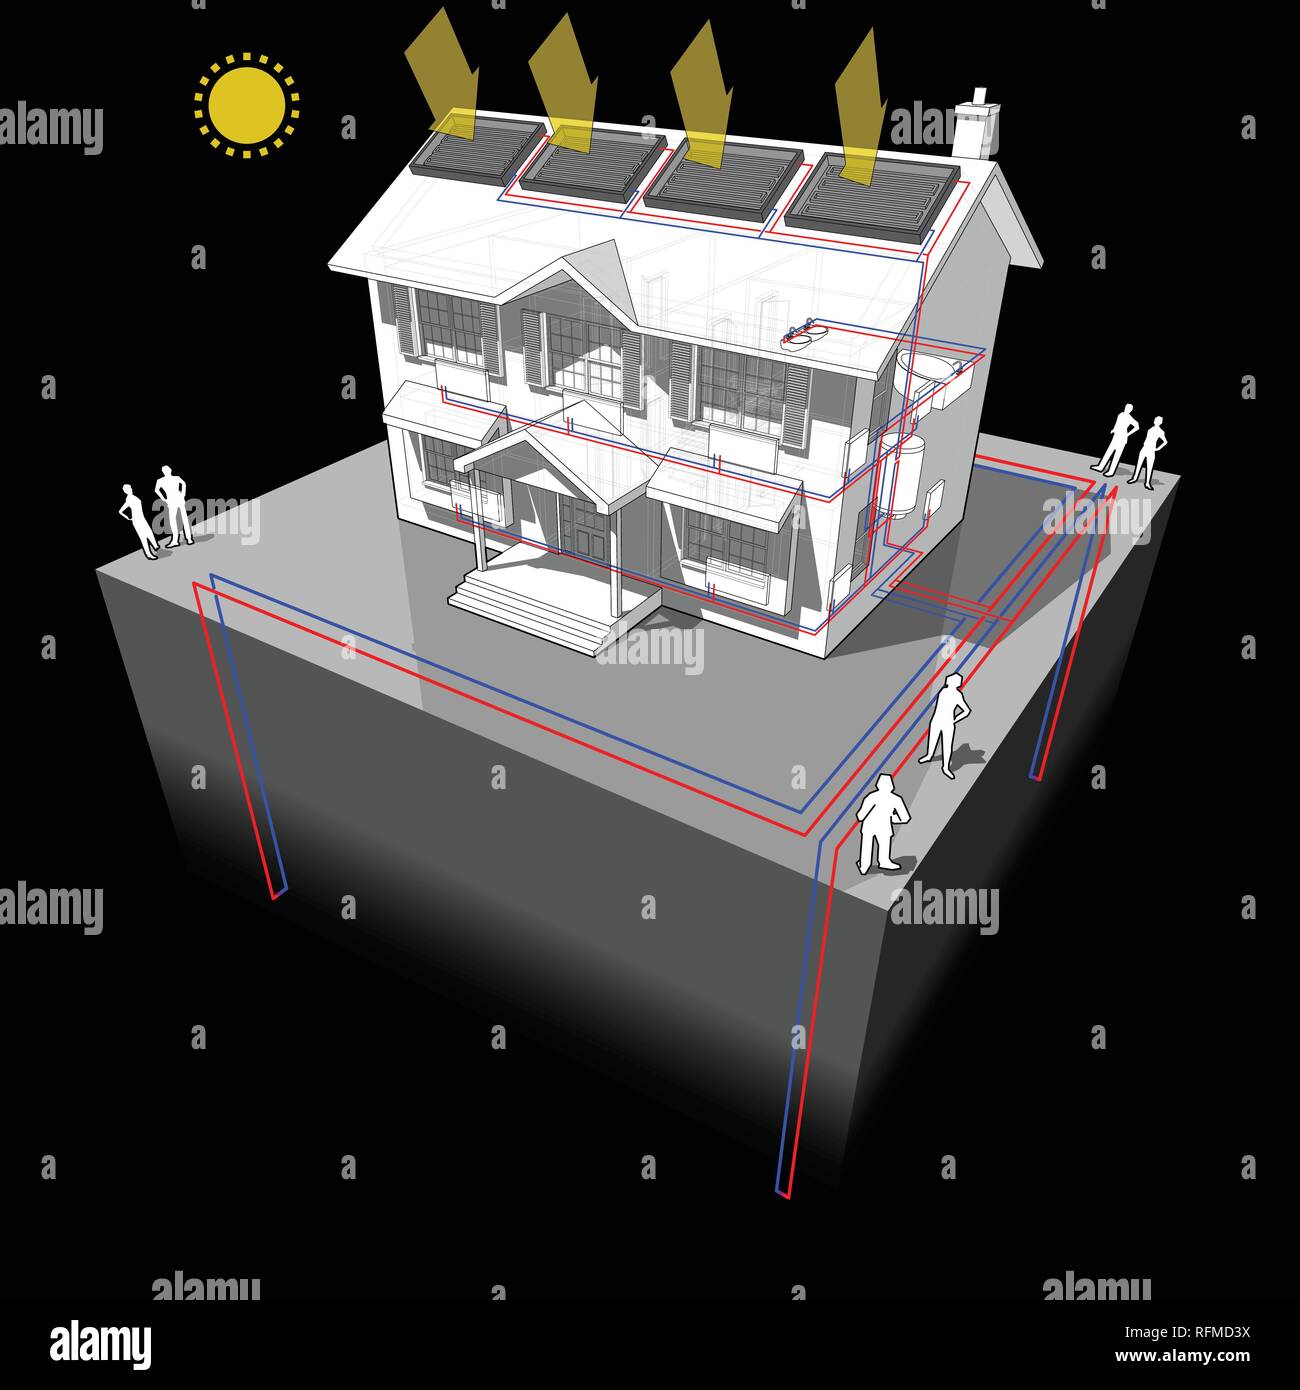 Schema di una classica casa coloniale con massa sorgente di pompa di calore con 4 pozzetti come fonte di energia per il riscaldamento e radiatori Illustrazione Vettoriale